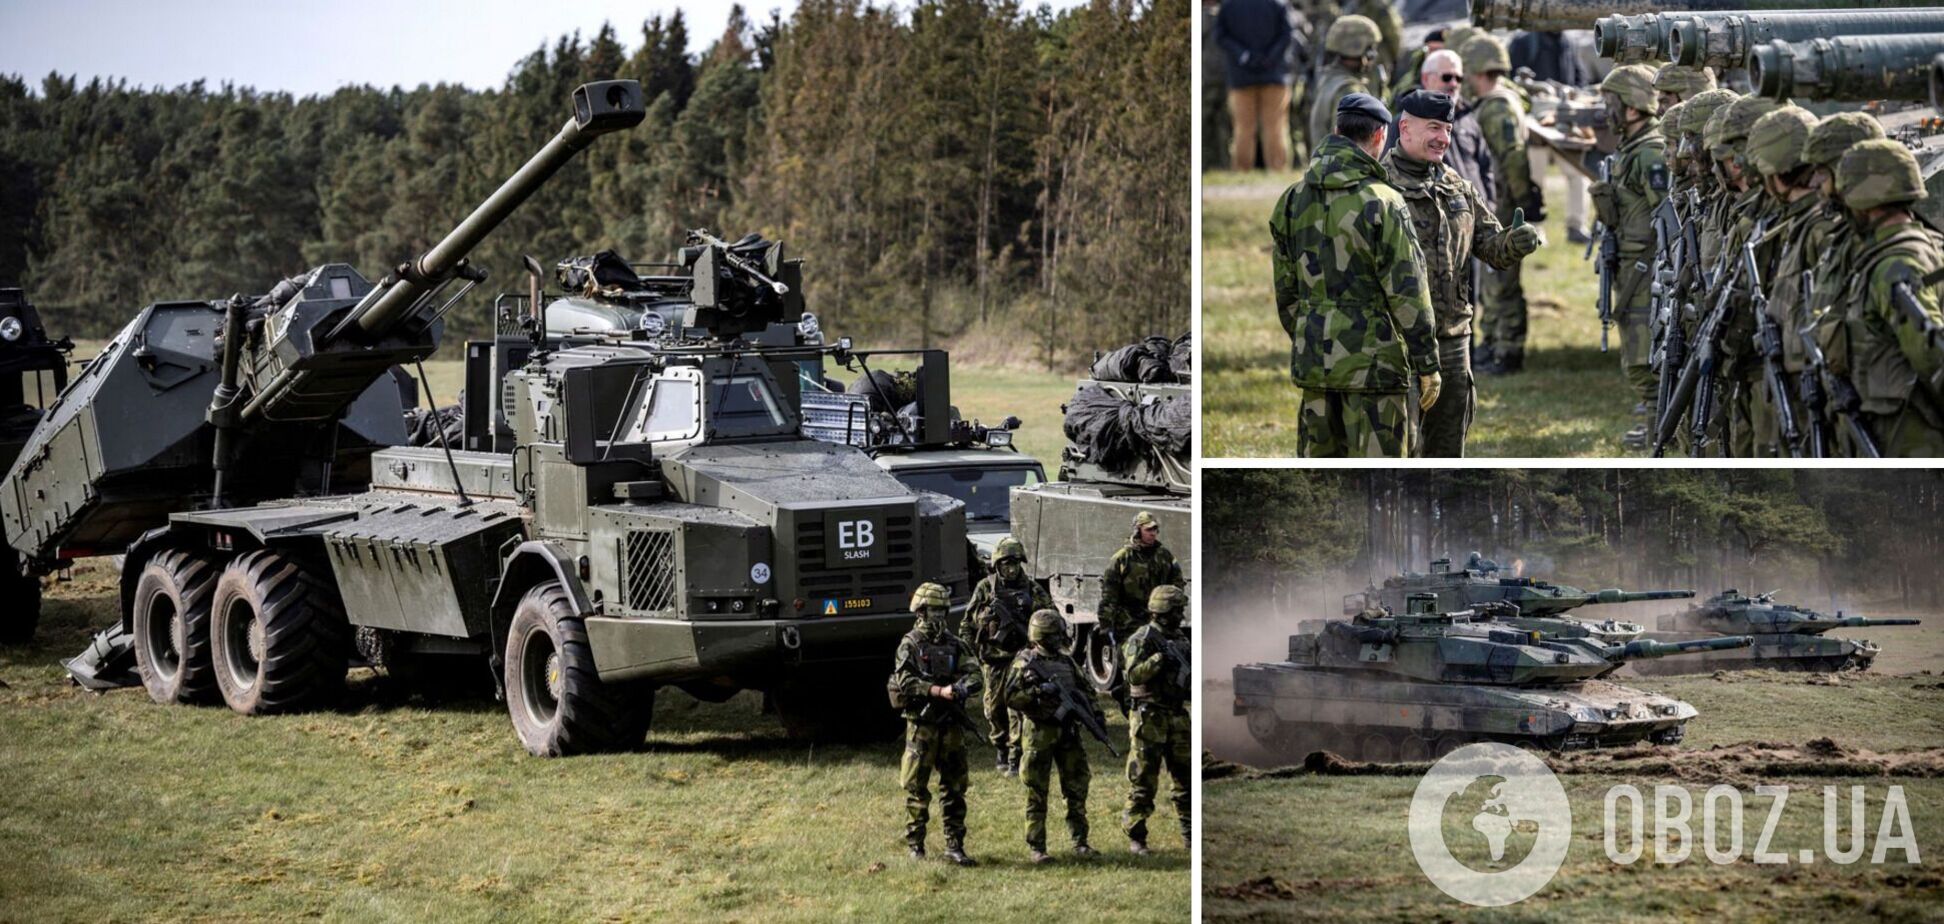  У НАТО готують секретний оборонний план на випадок конфлікту з Росією – Reuters